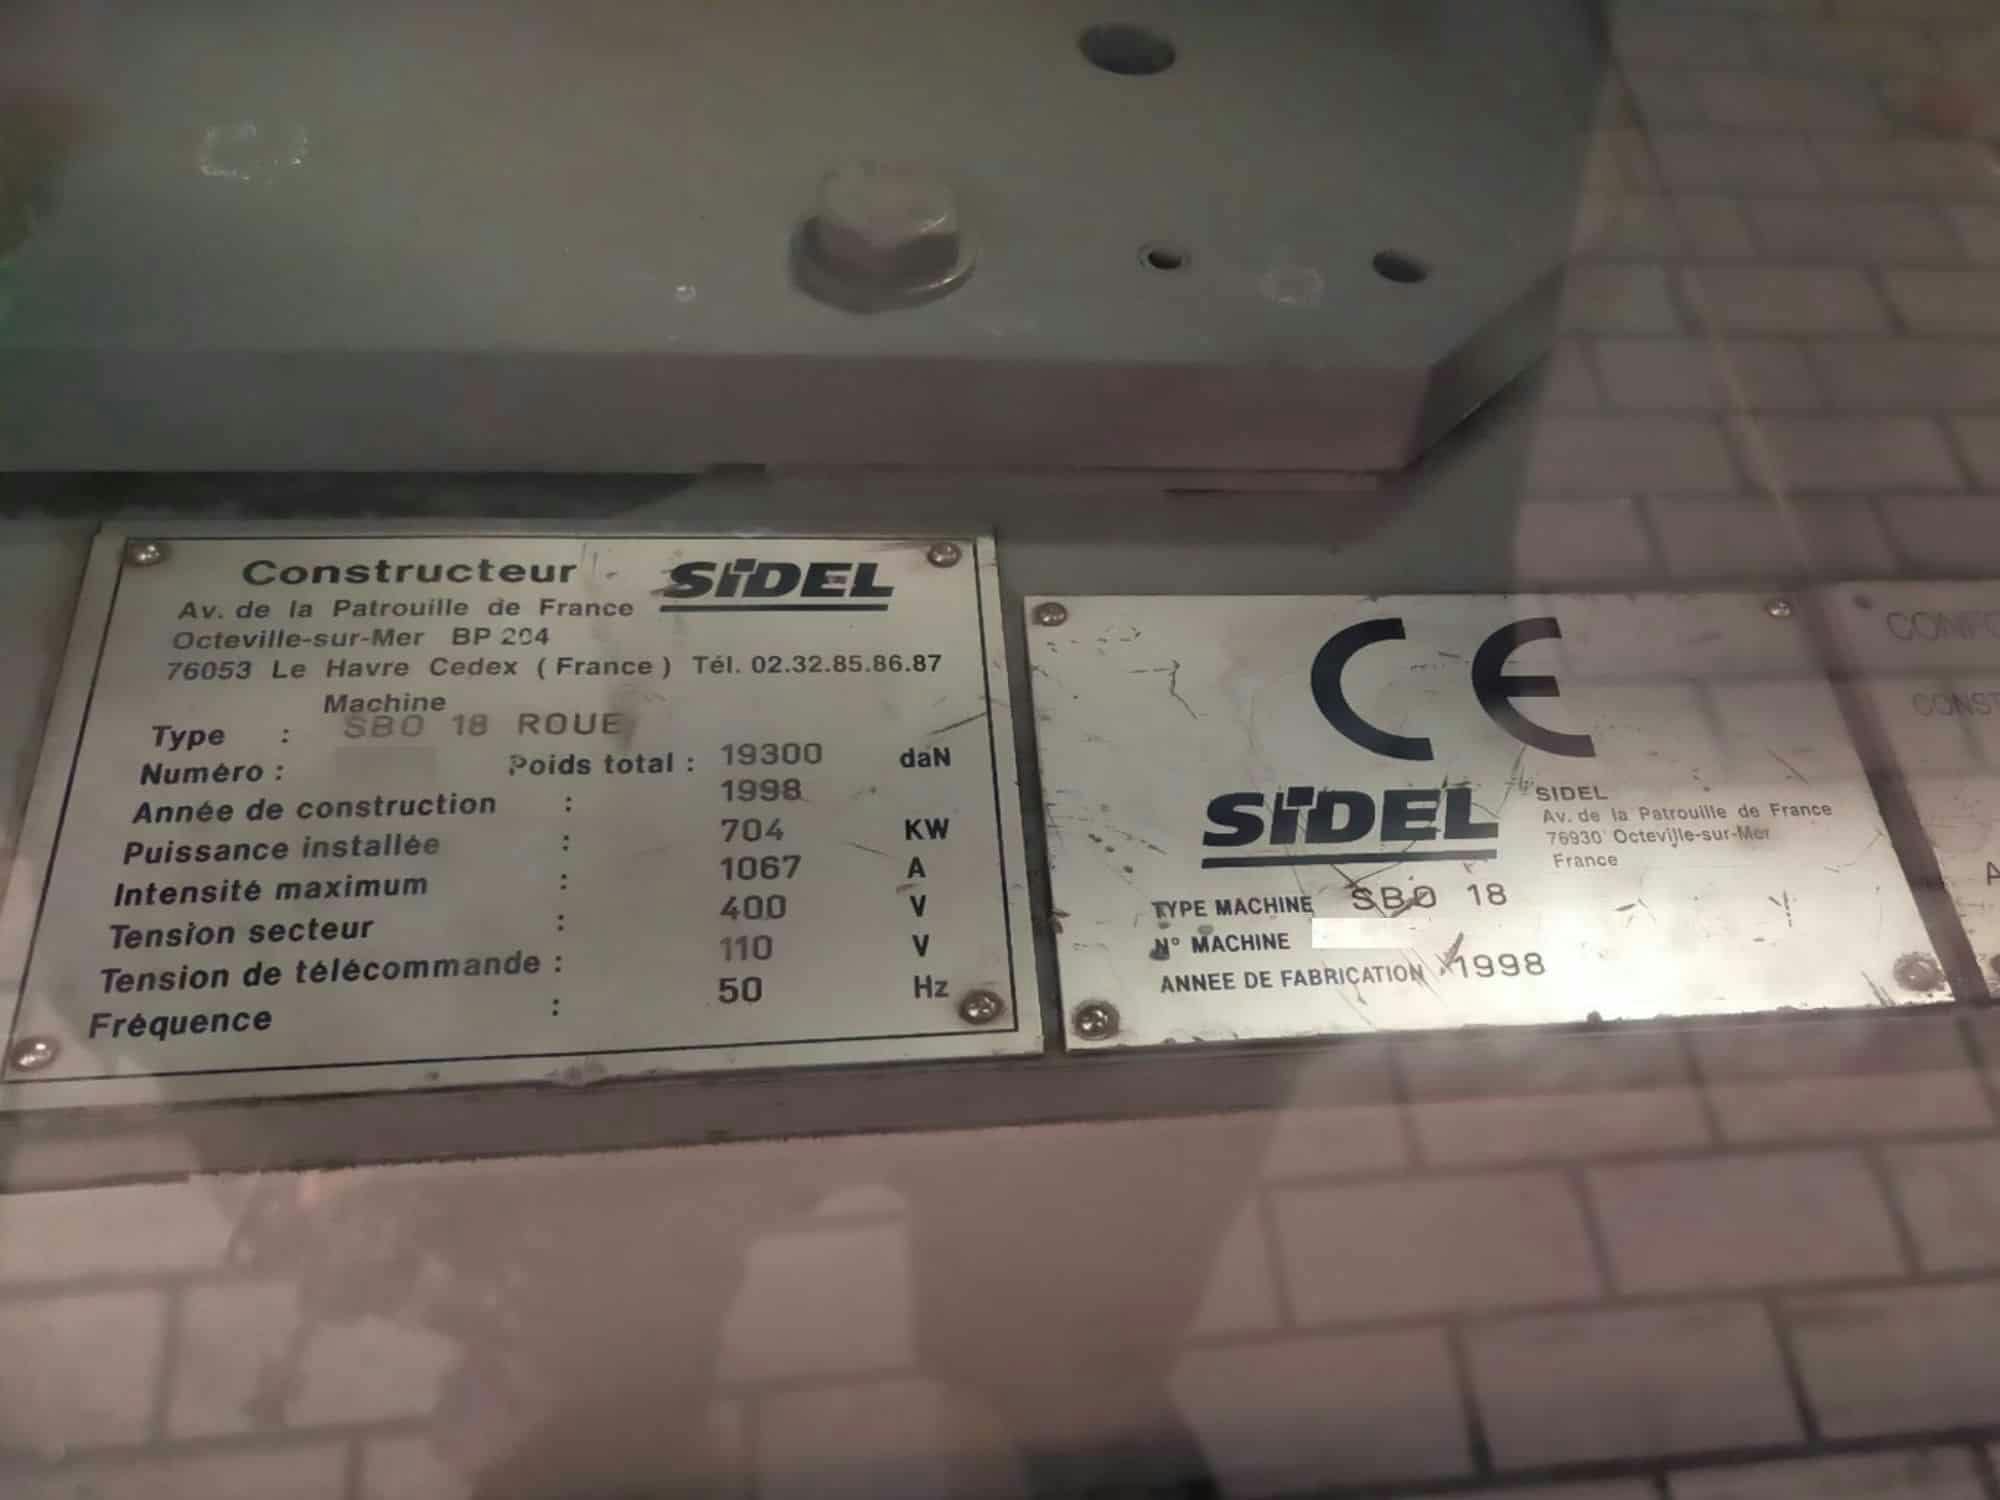 Nameplate of Sidel SBO 18 Series 2